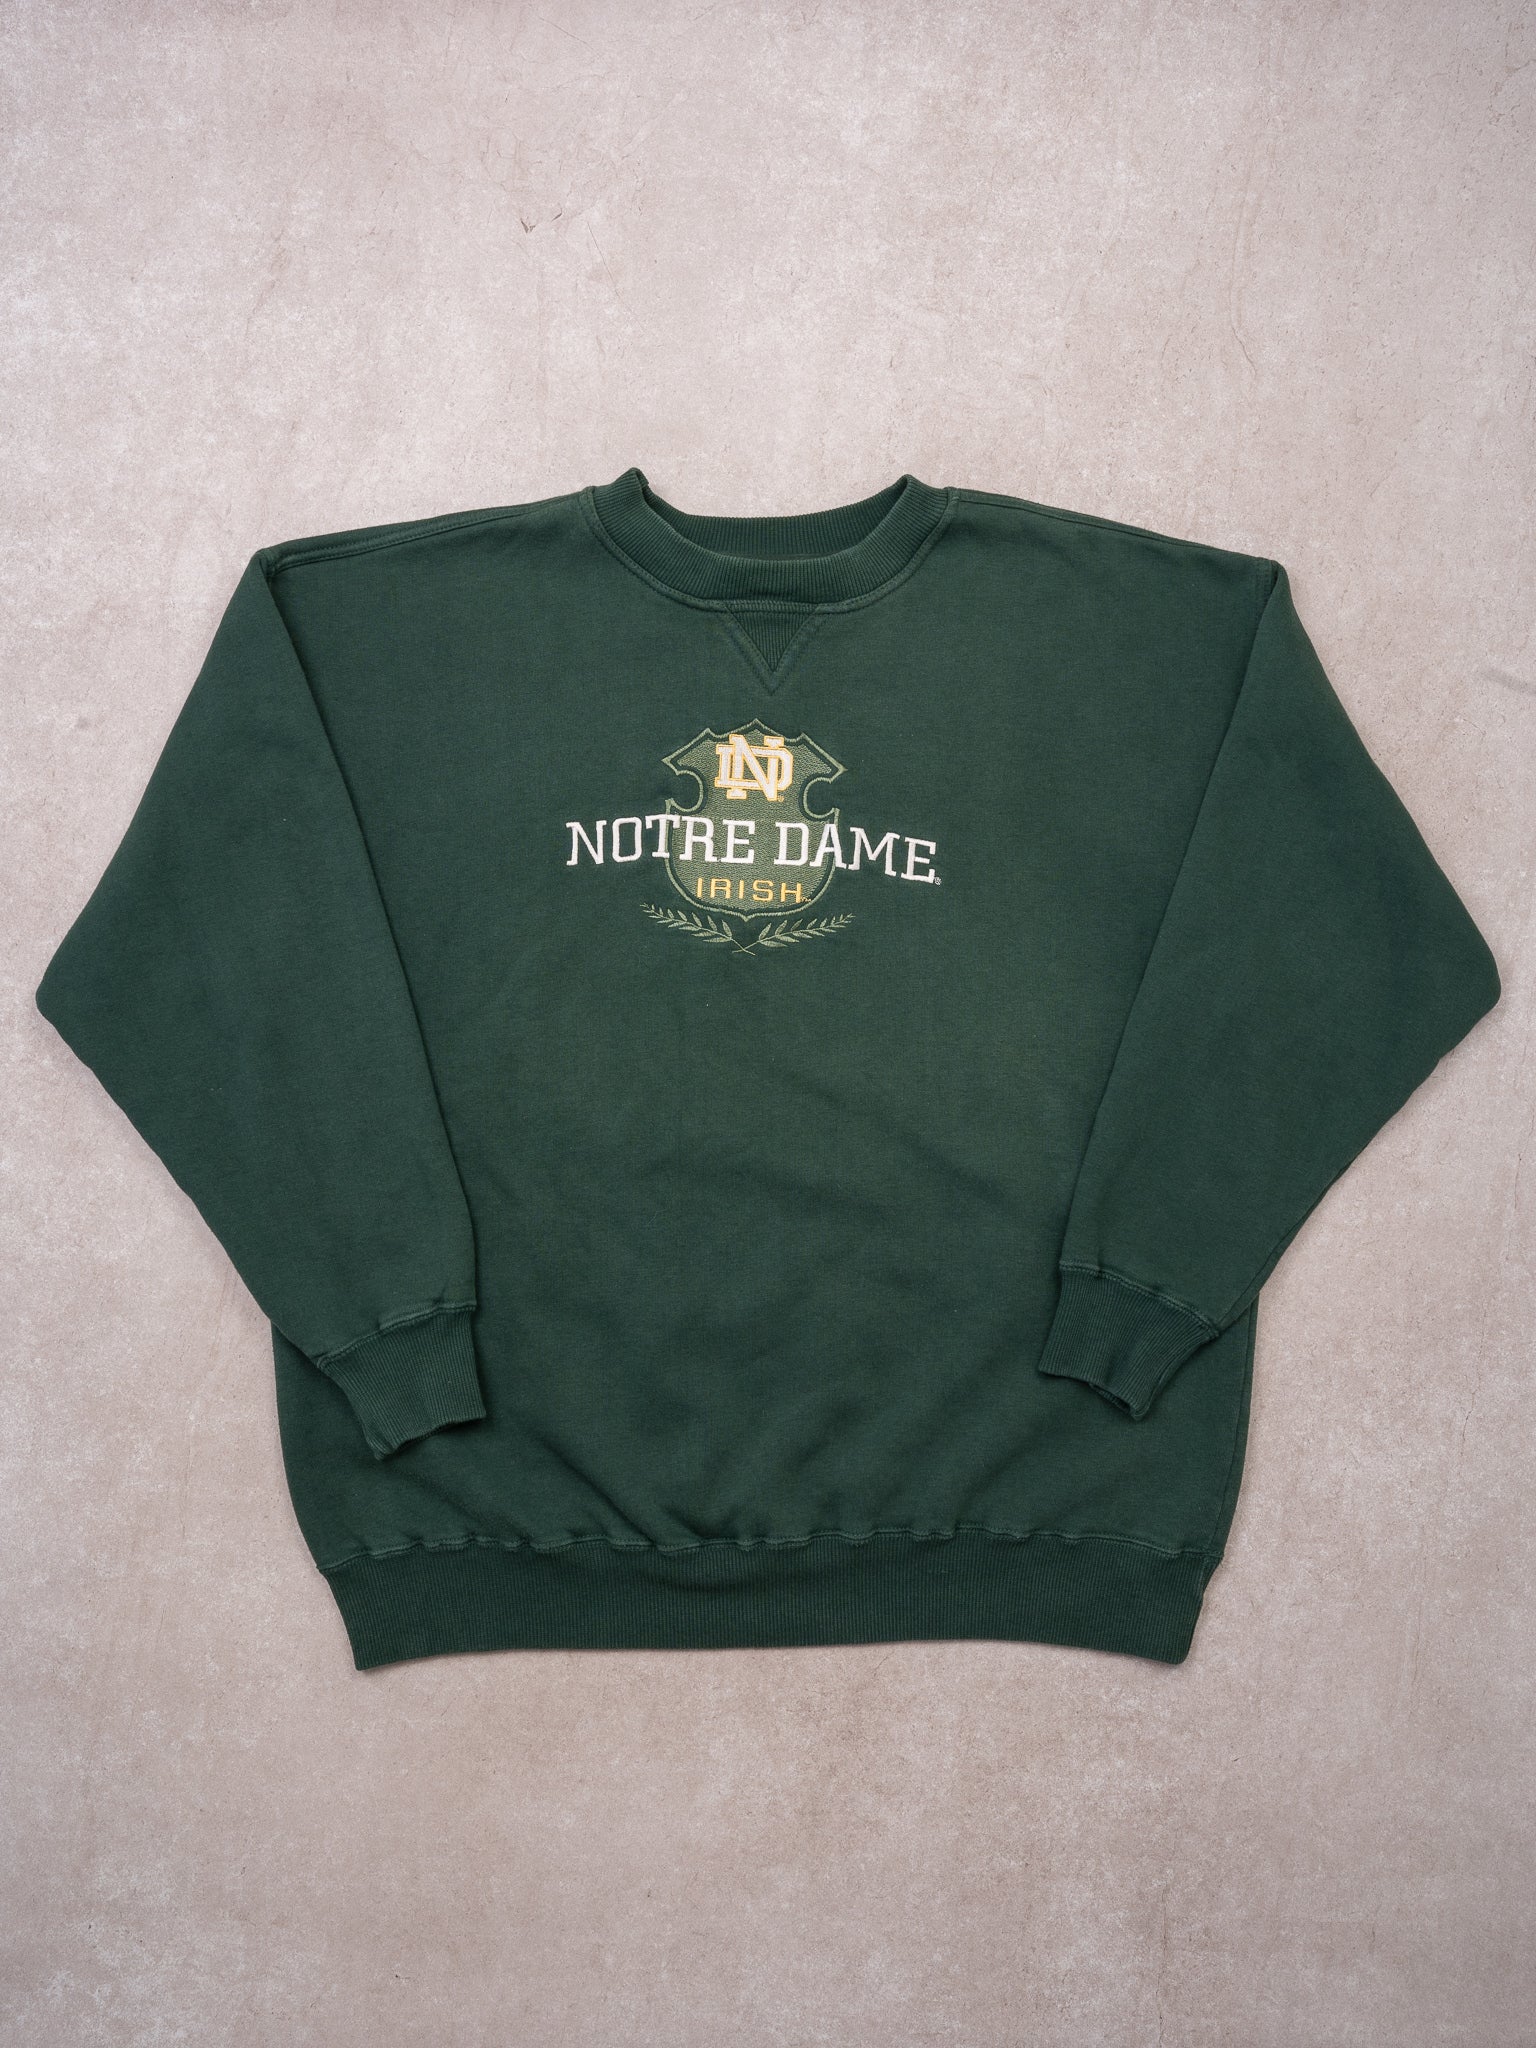 Vintage Green Notre Dame Irish Crest Crewneck (XL)